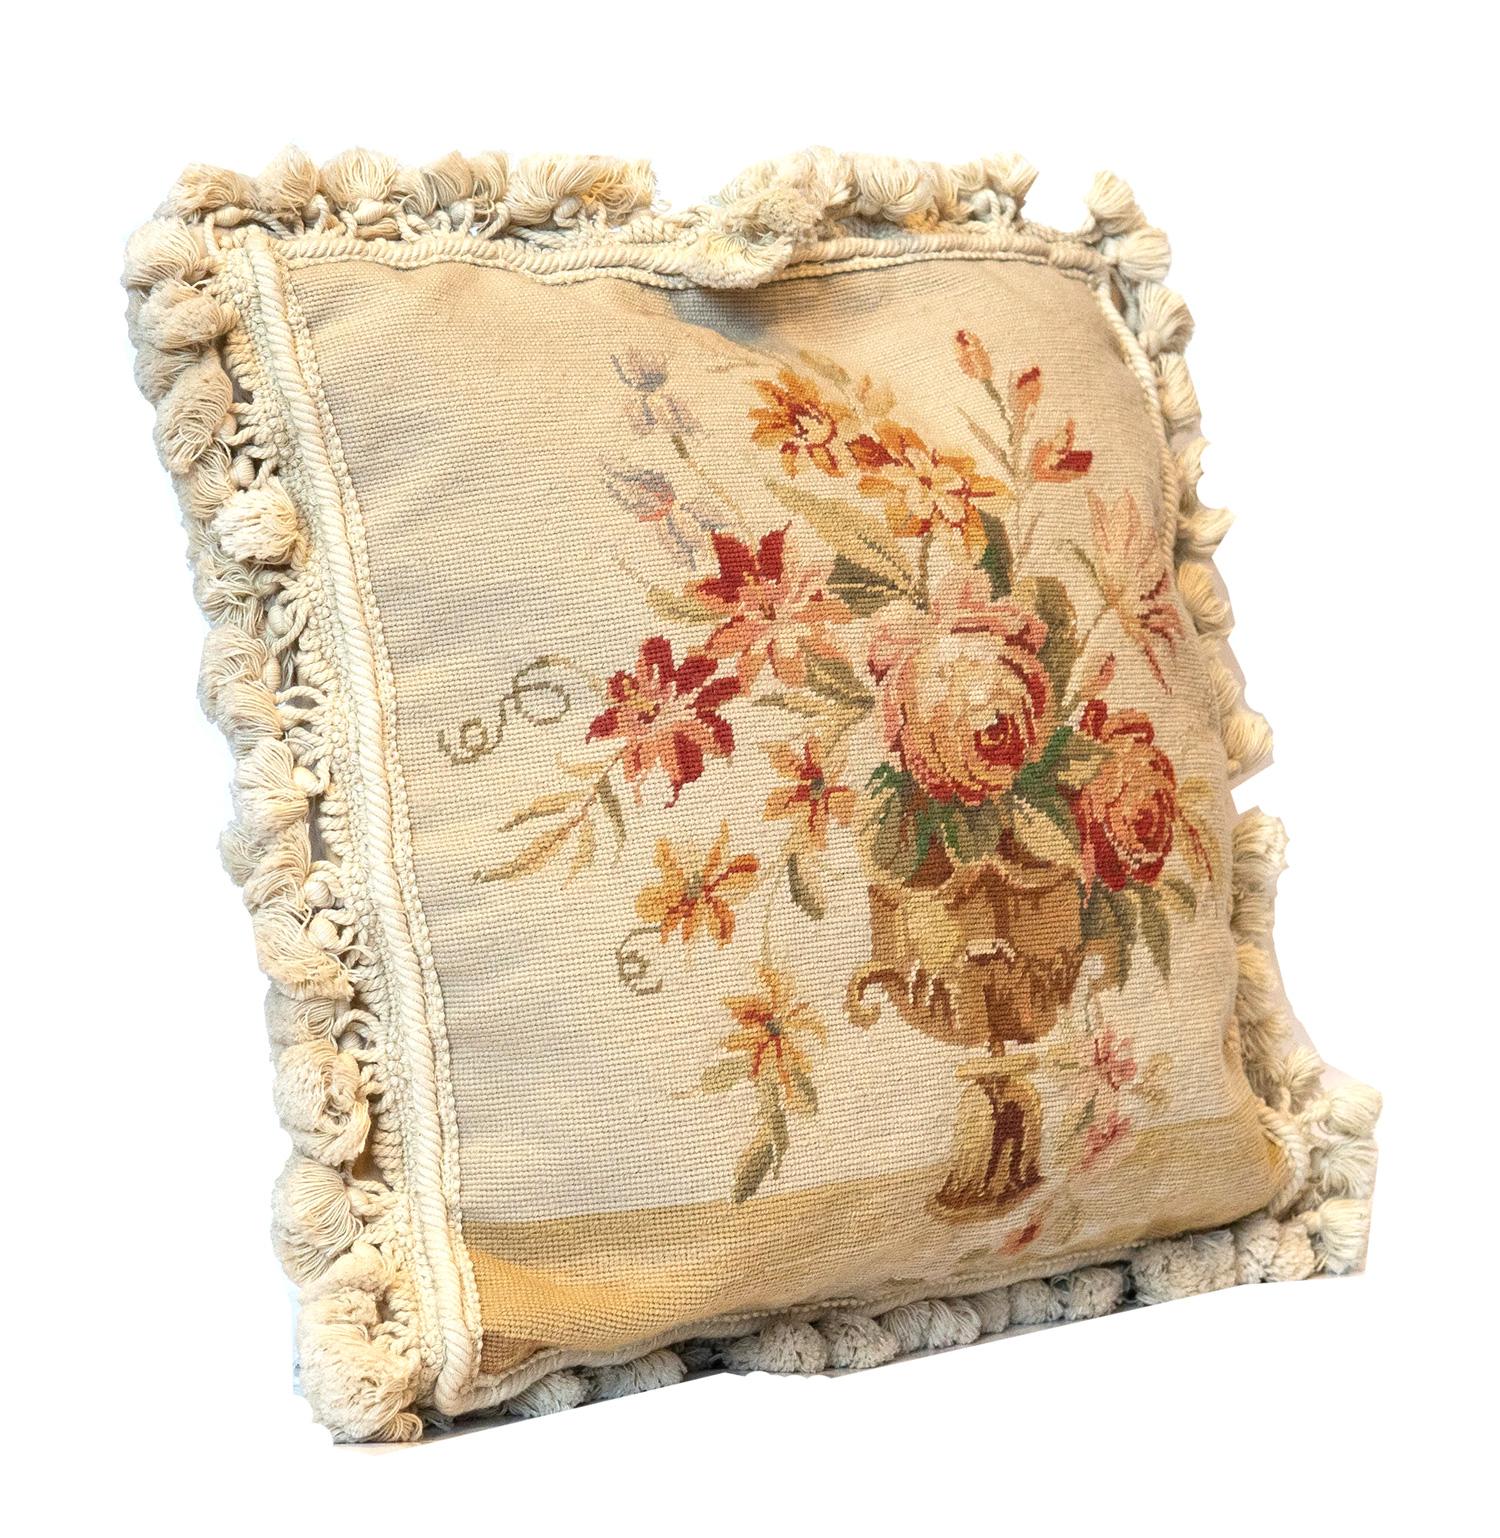 Tapis ancien vintage taie d'oreiller fermeture éclair coussin fait à la main couvre-oreiller à l'aiguille, voir l'une des collections les plus complètes de l'oreiller décoratif, fait à la main couvre-oreiller jeté de tapis floraux traditionnels,